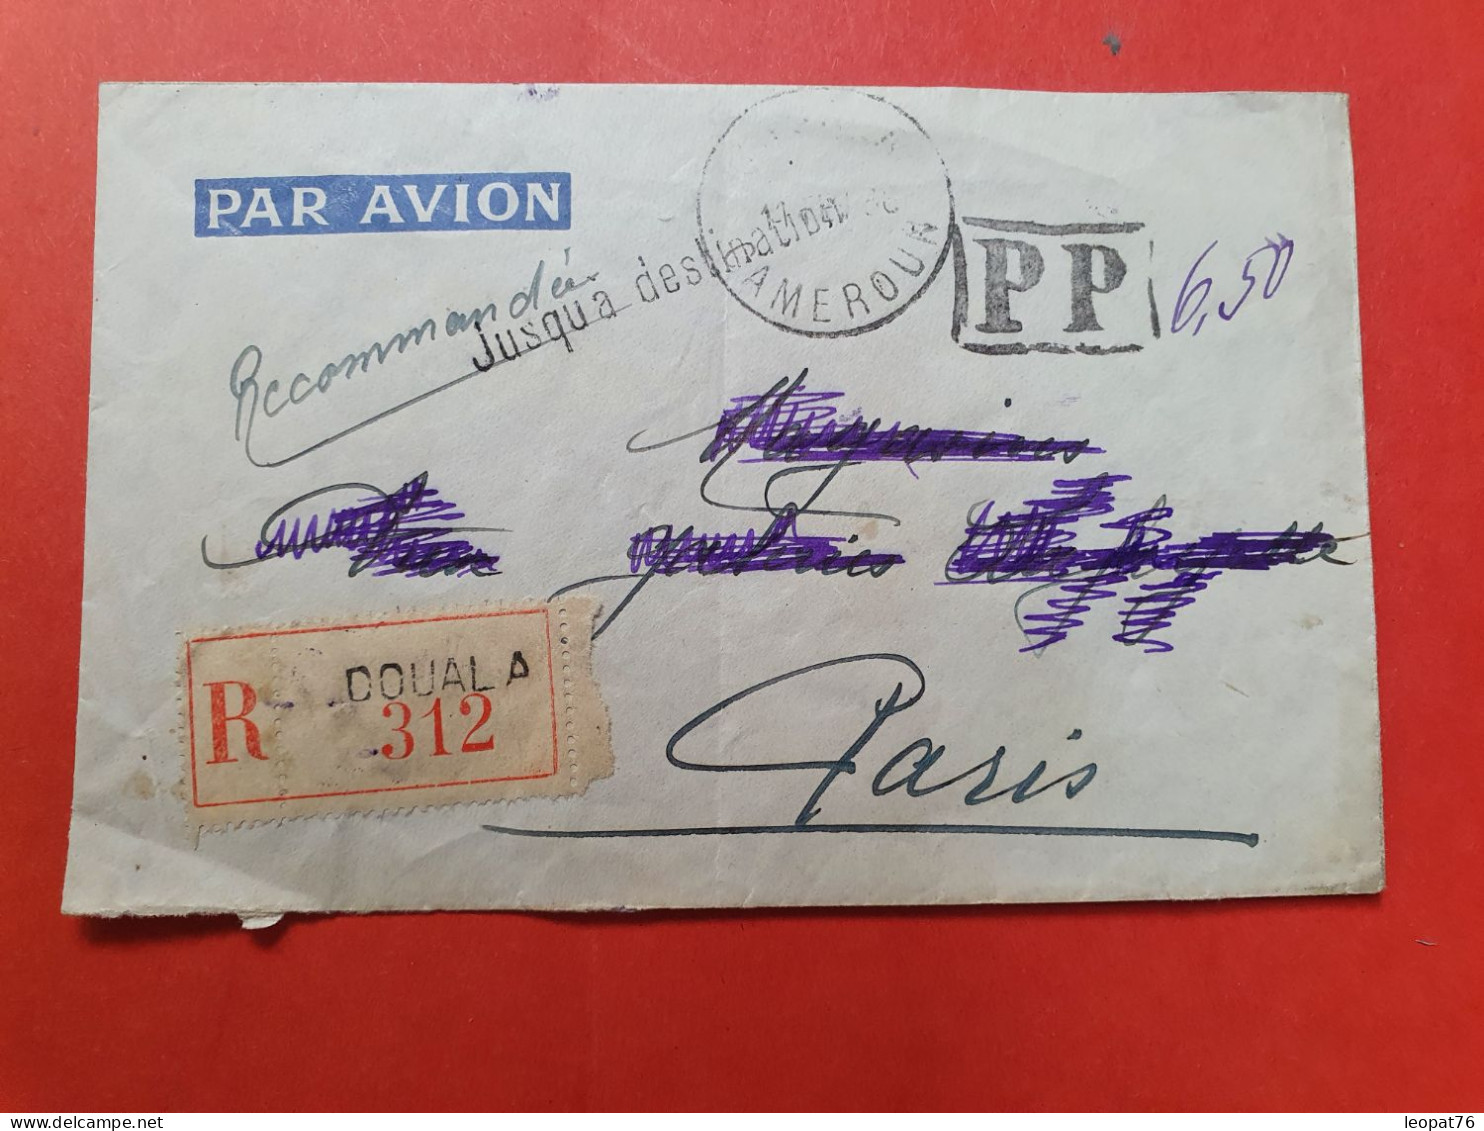 Cameroun - Enveloppe En Recommandé De Douala En PP Pour Paris En 1938 - D 31 - Storia Postale